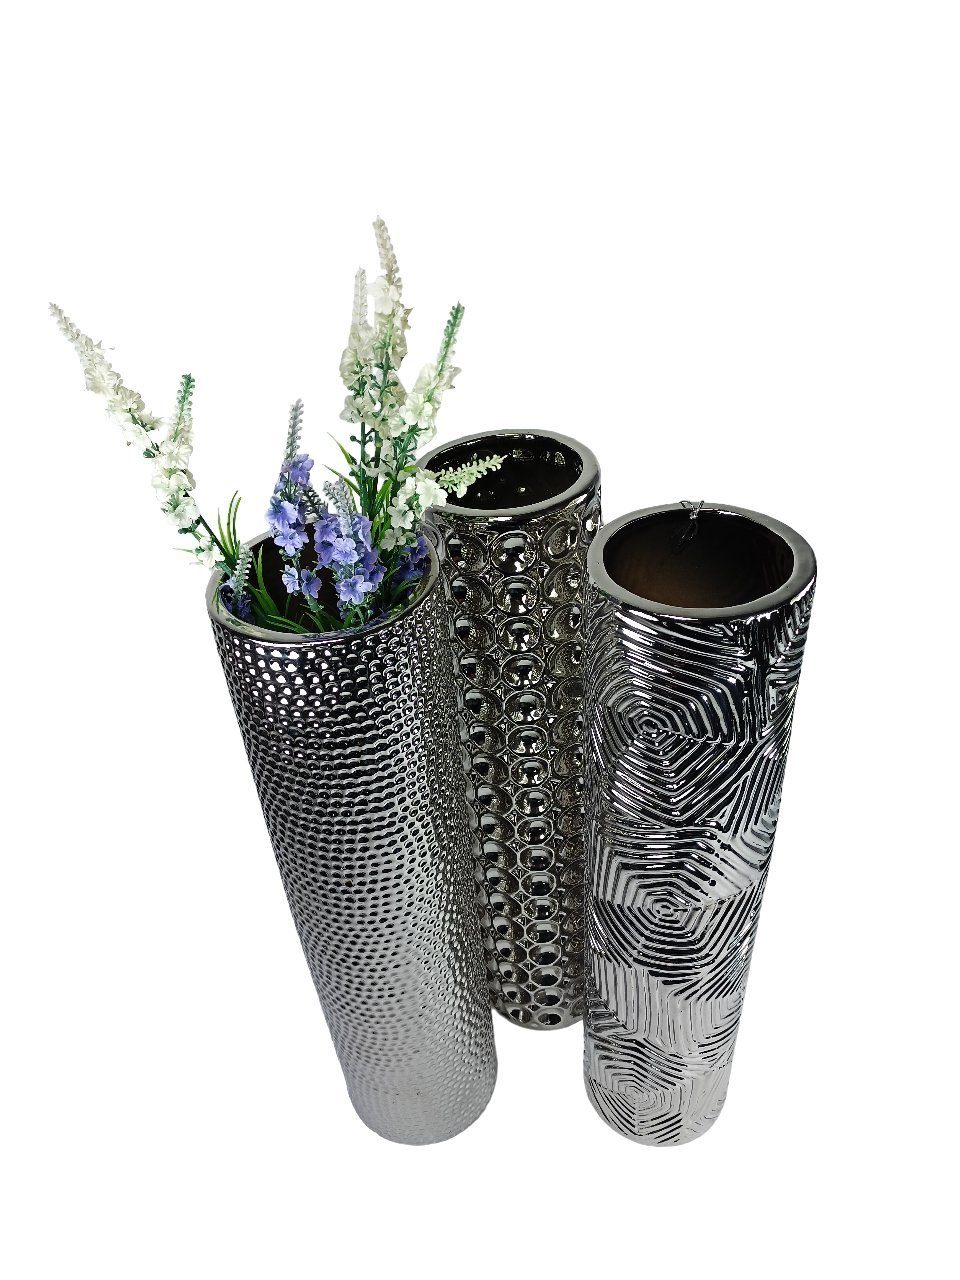 50x12cm Blumenvase GlasArt Wohnzimmer Deko-Vase Keramik edel Schöne Silber Dekovase